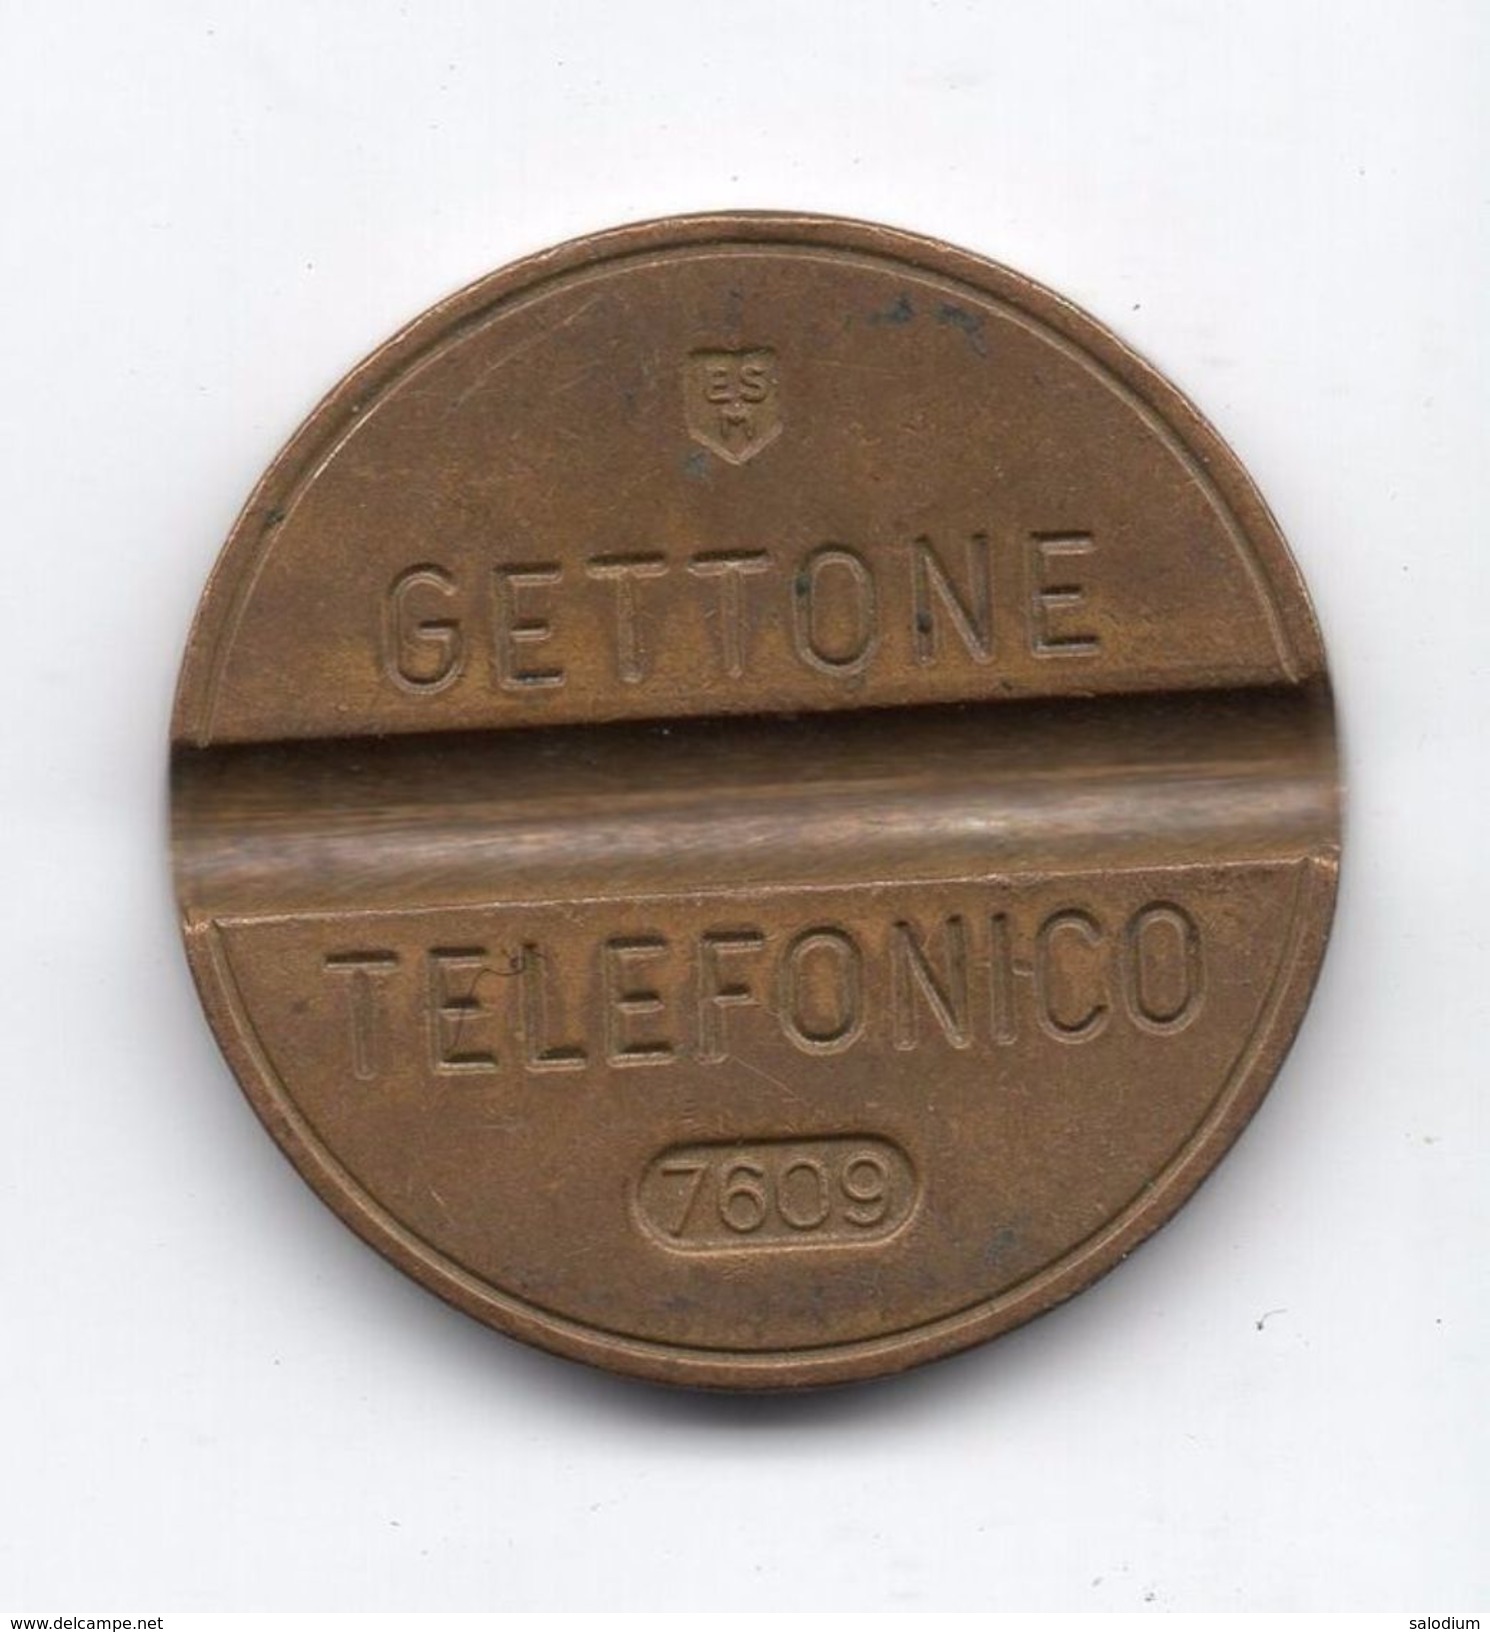 Gettone Telefonico 7609 Token Telephone - (Id-805) - Professionnels/De Société